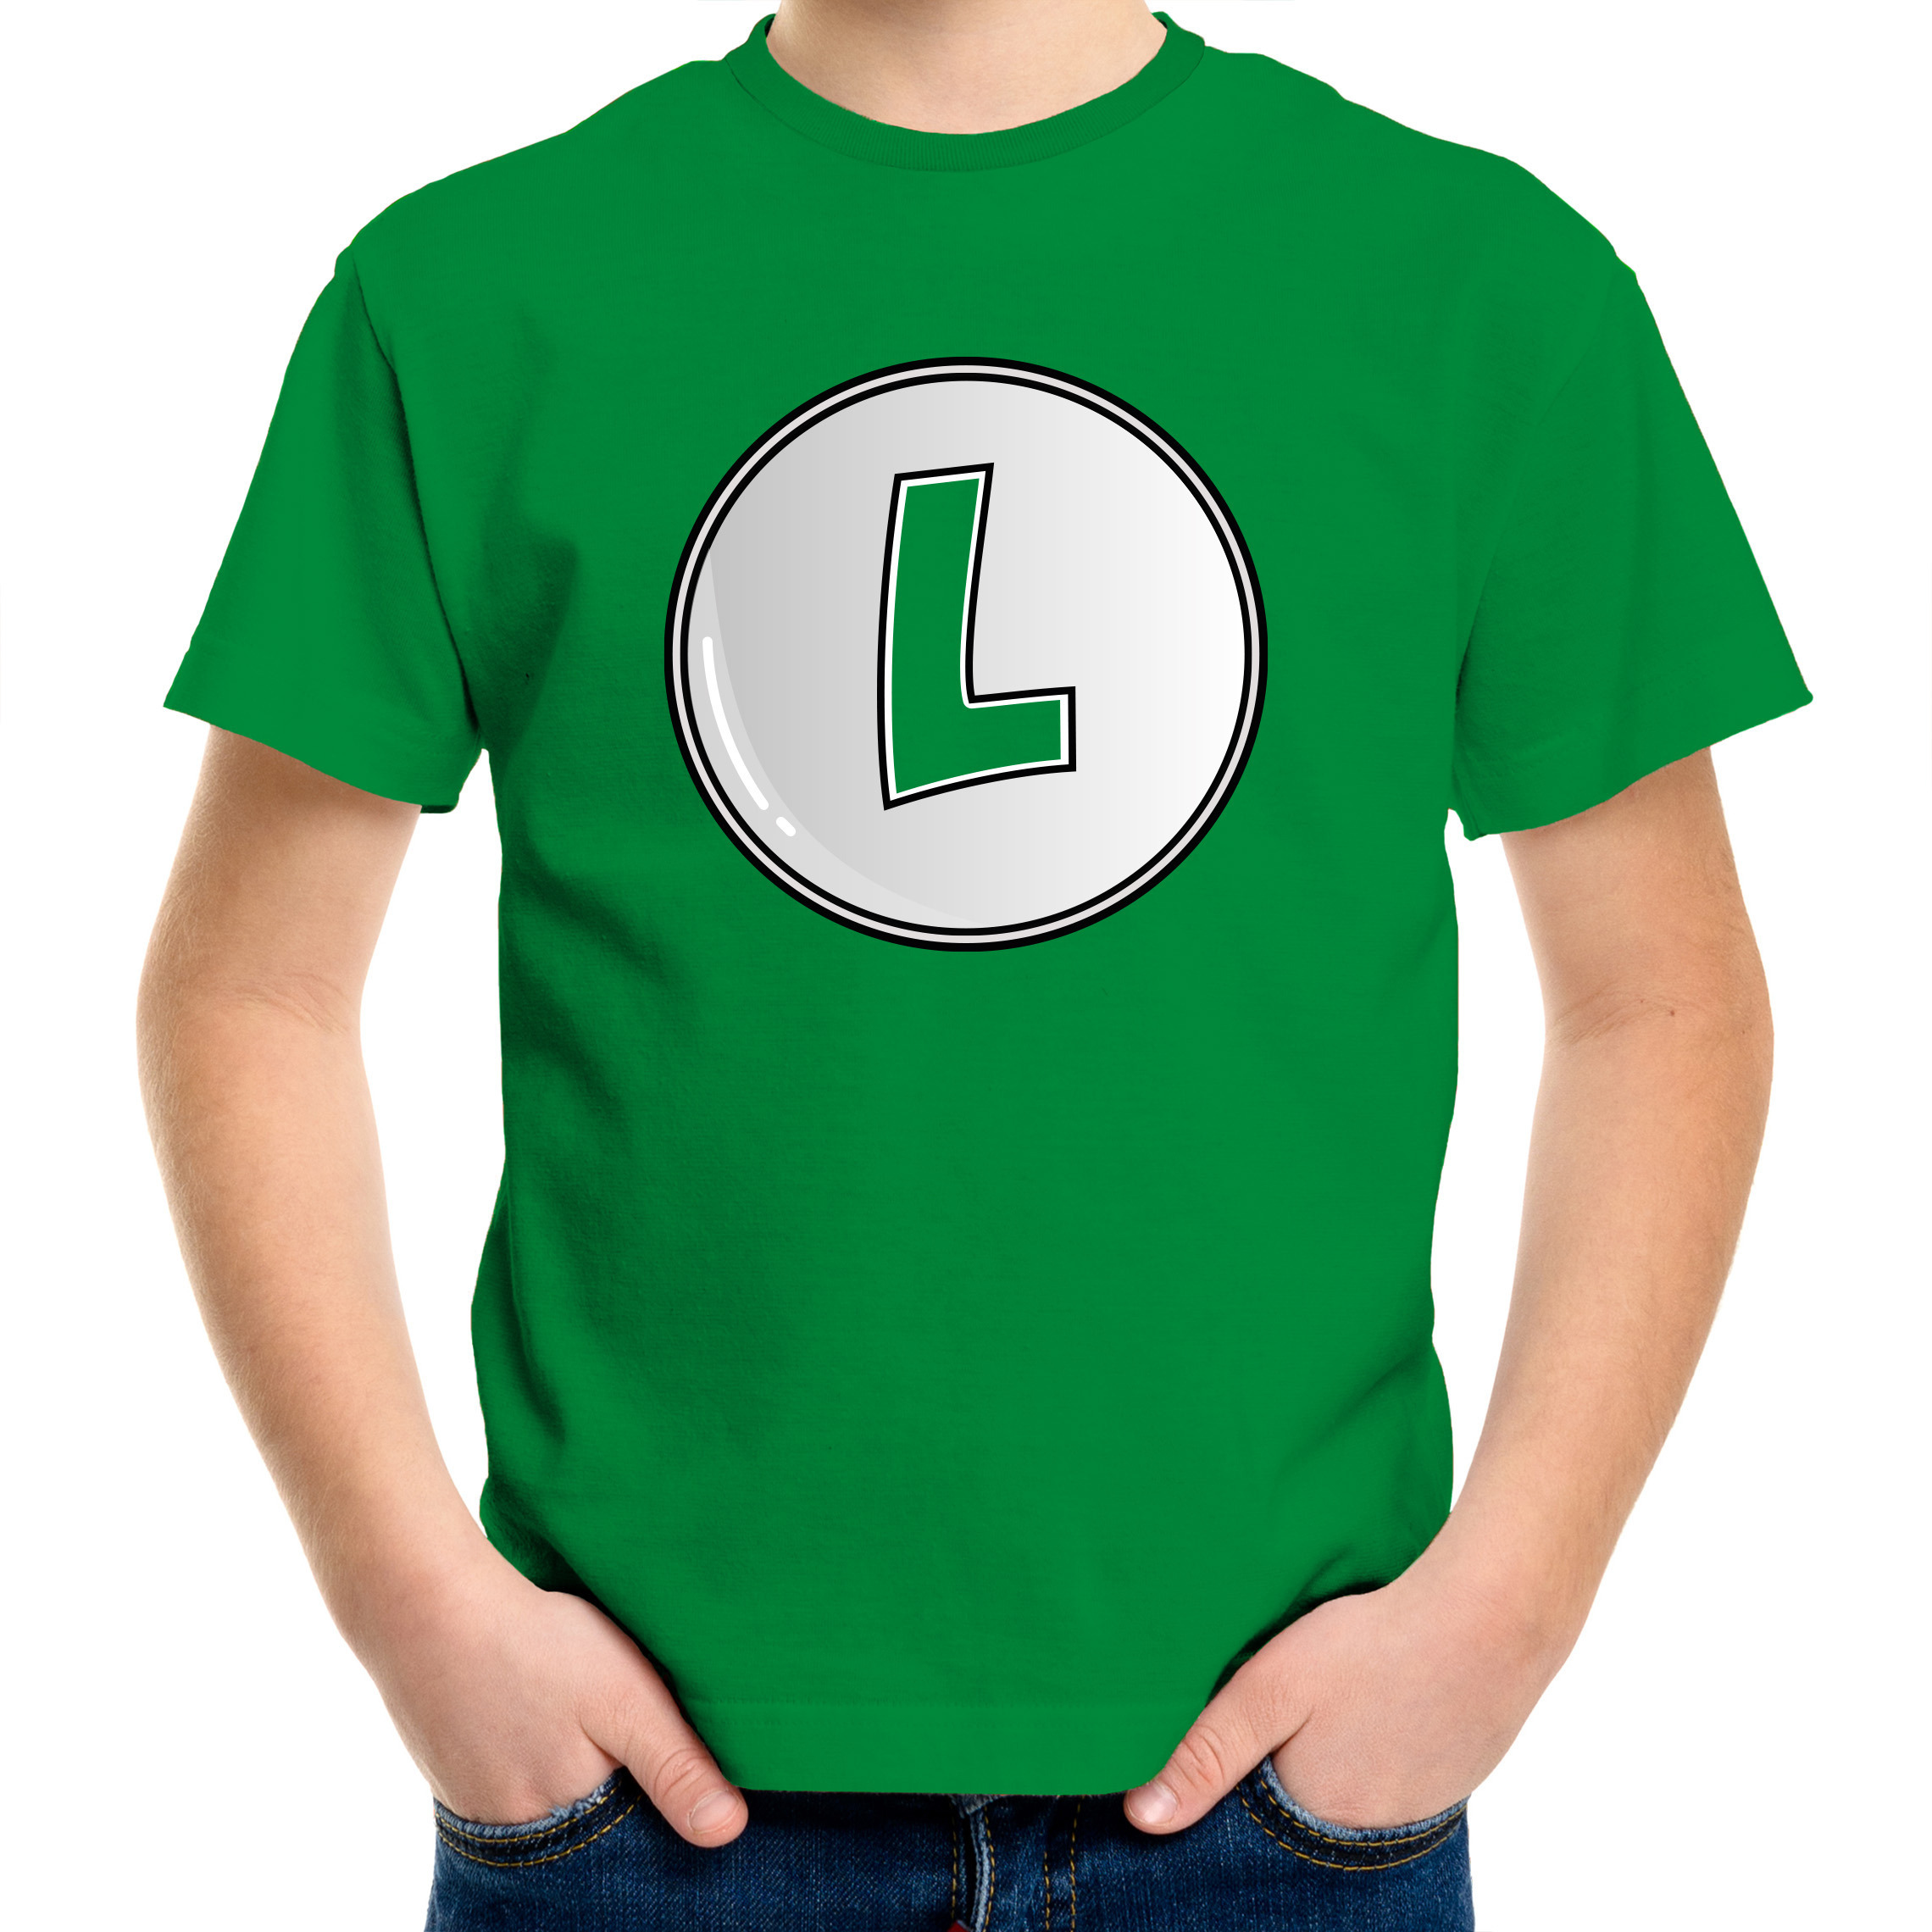 Game verkleed t-shirt voor kinderen loodgieter Luigi groen carnaval-themafeest kostuum